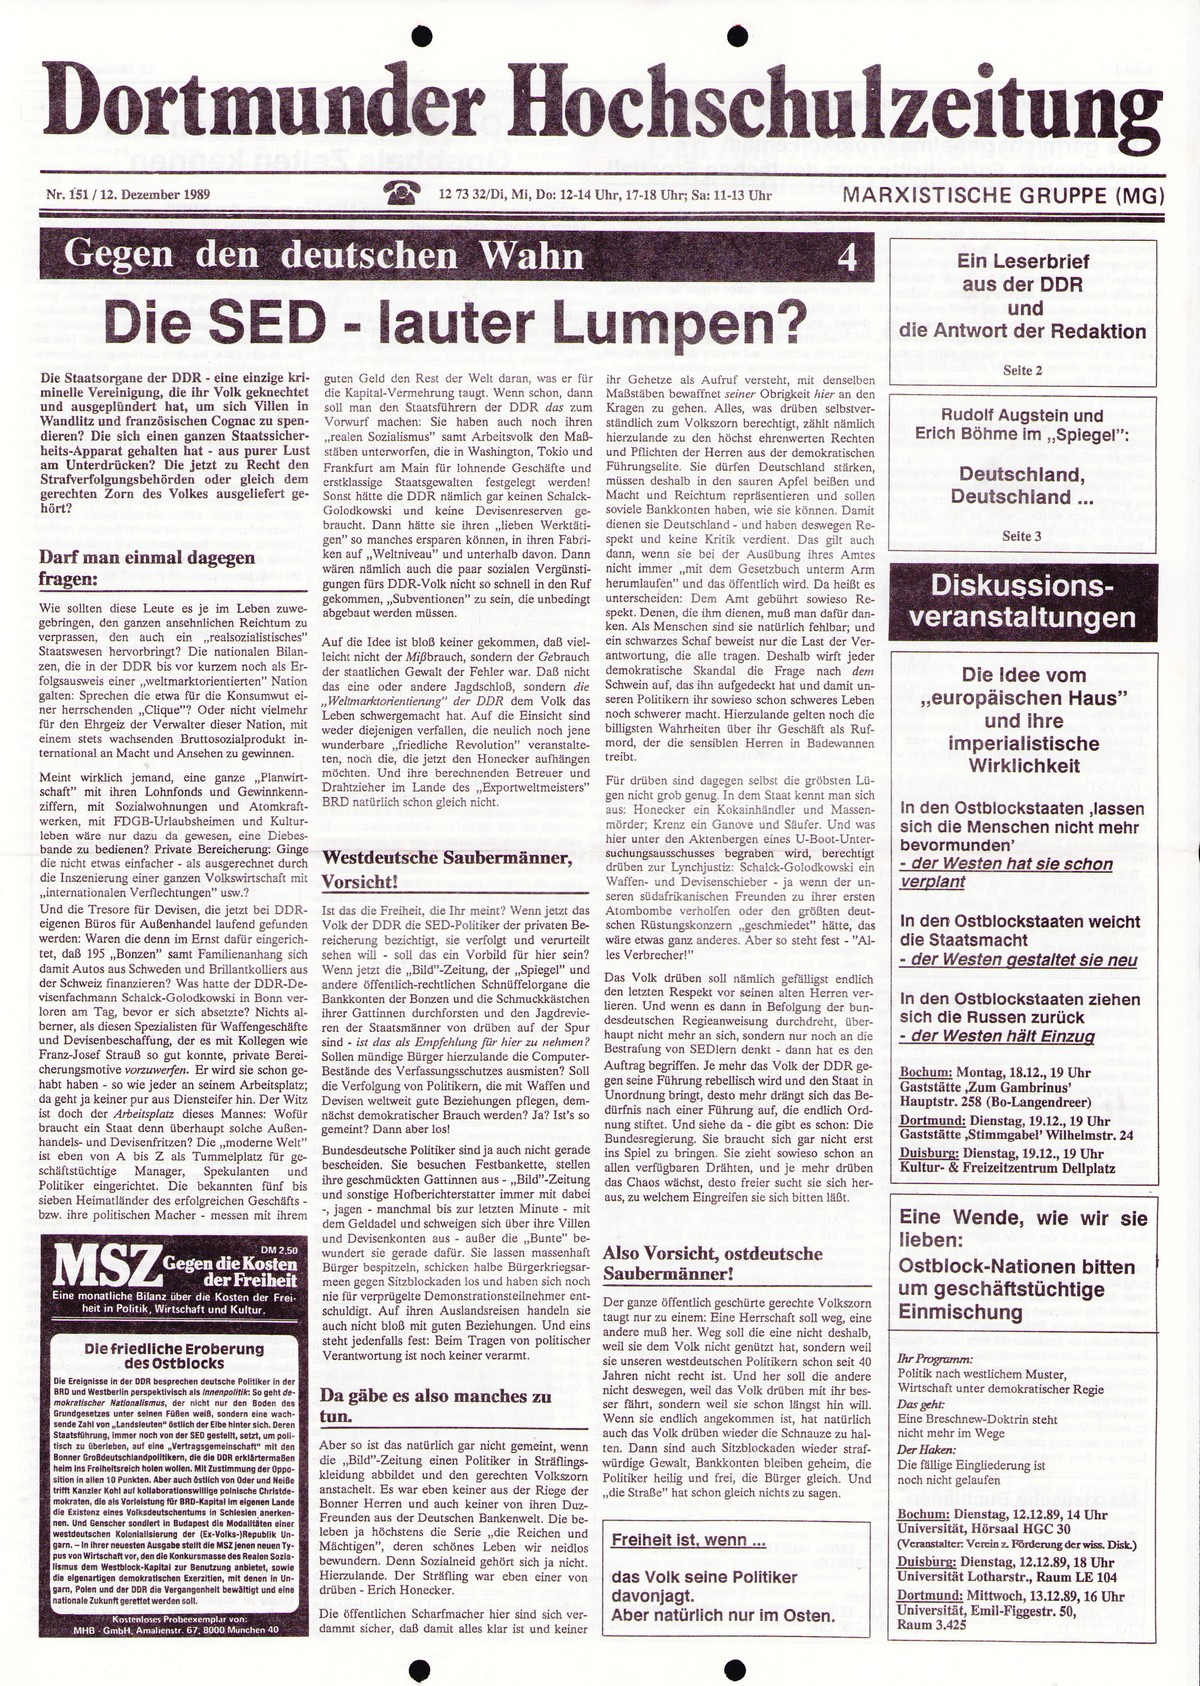 MG_Dortmunder_Hochschulzeitung_19891212_001